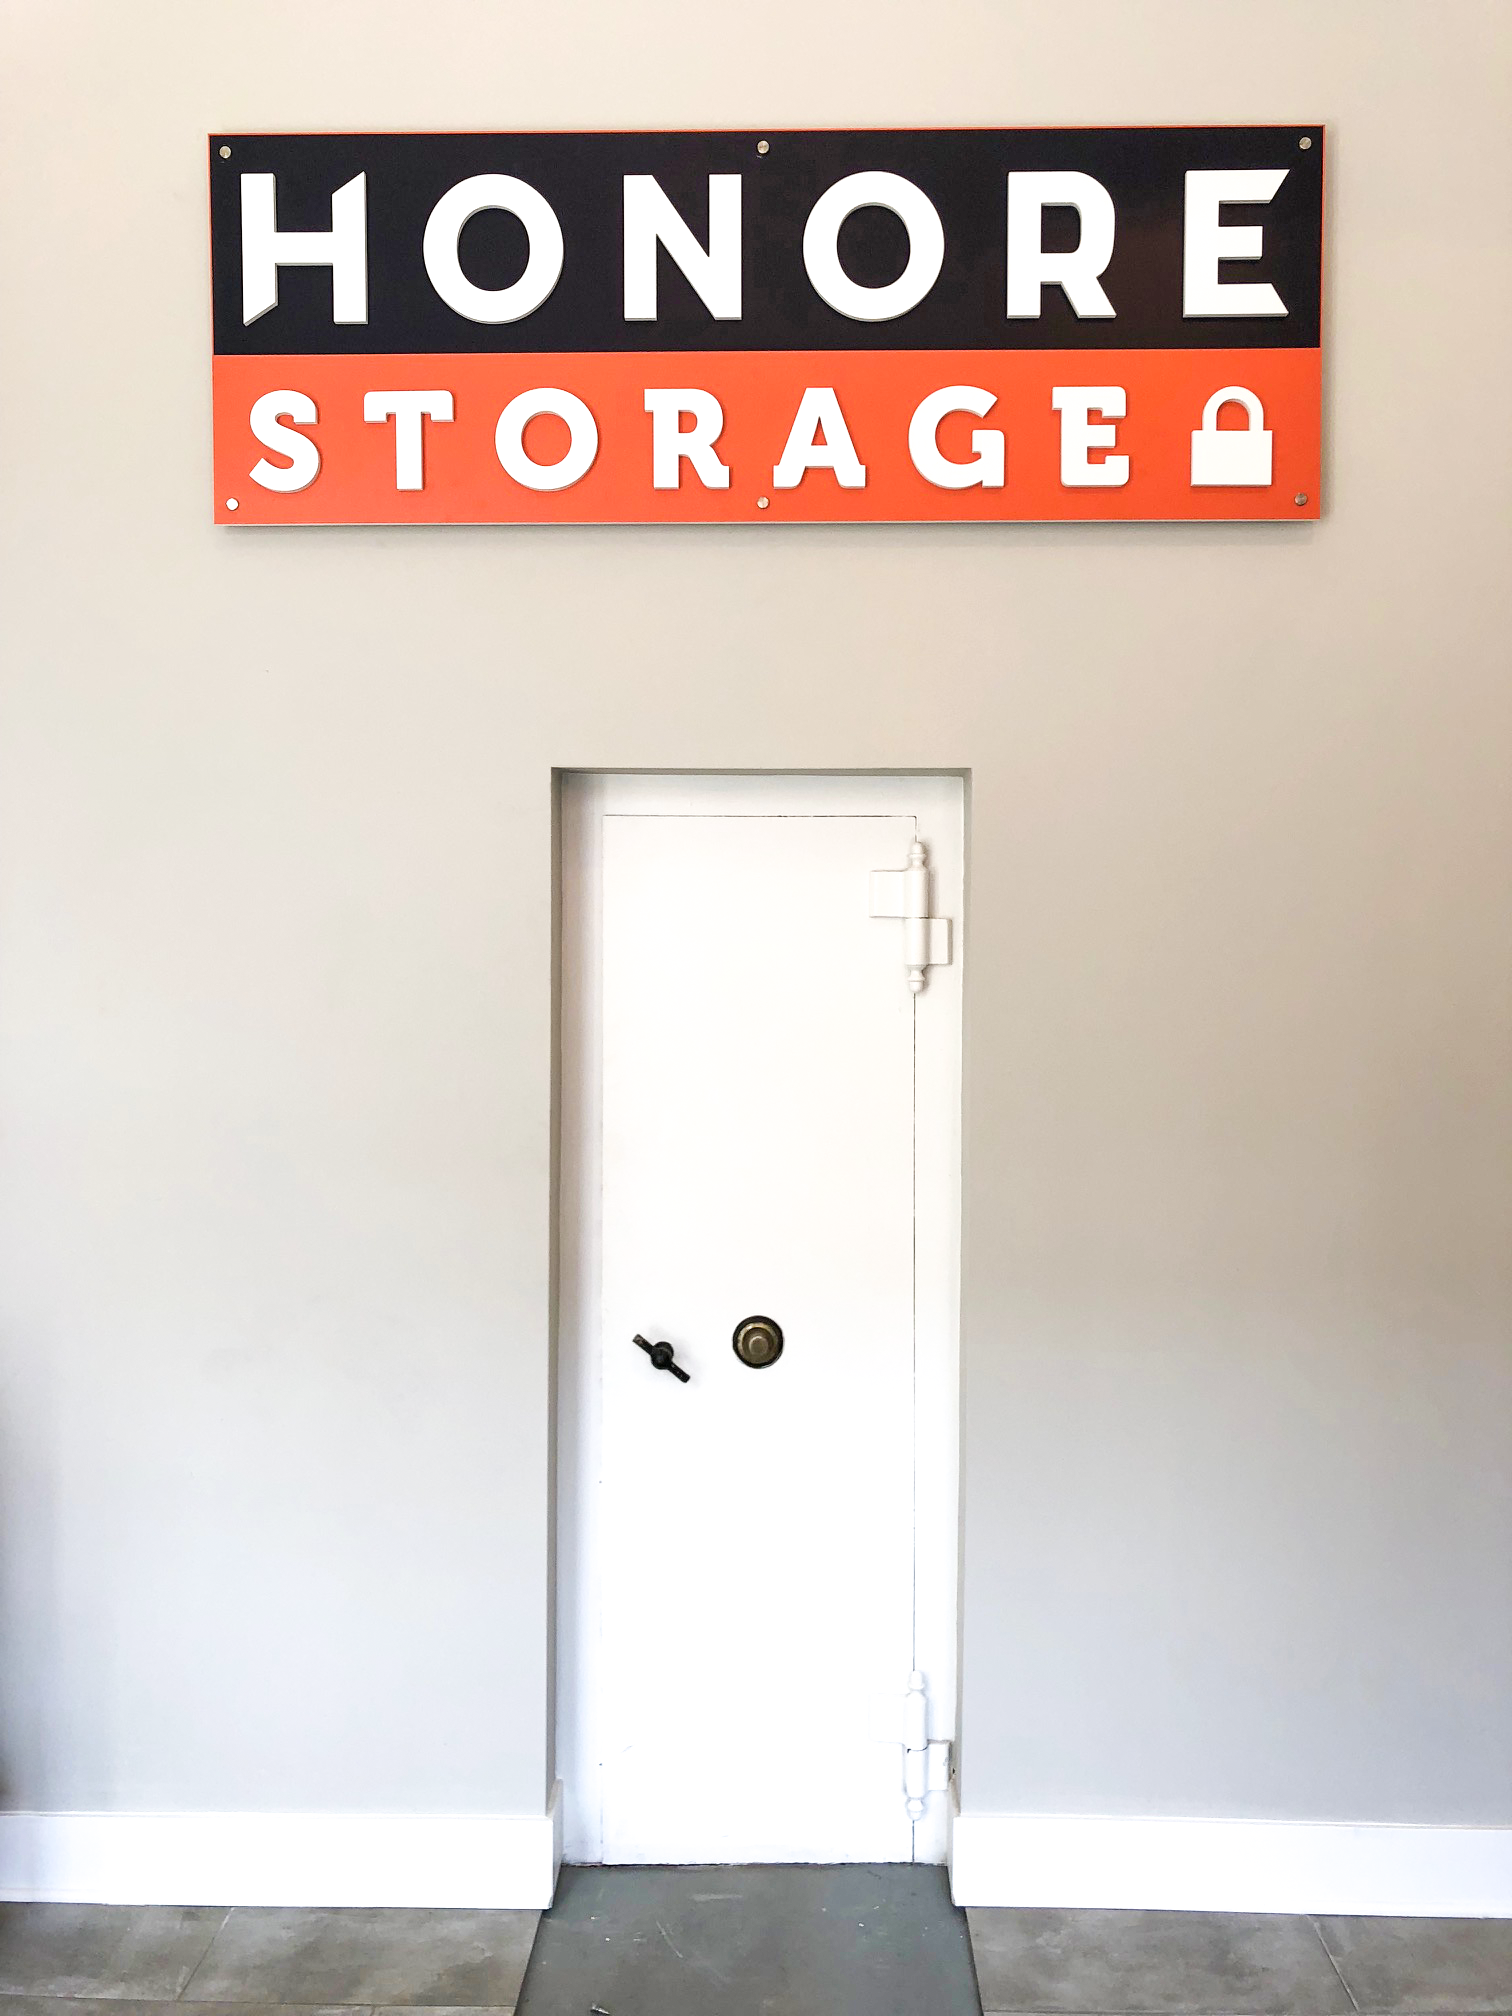 Honore Storage sign over door